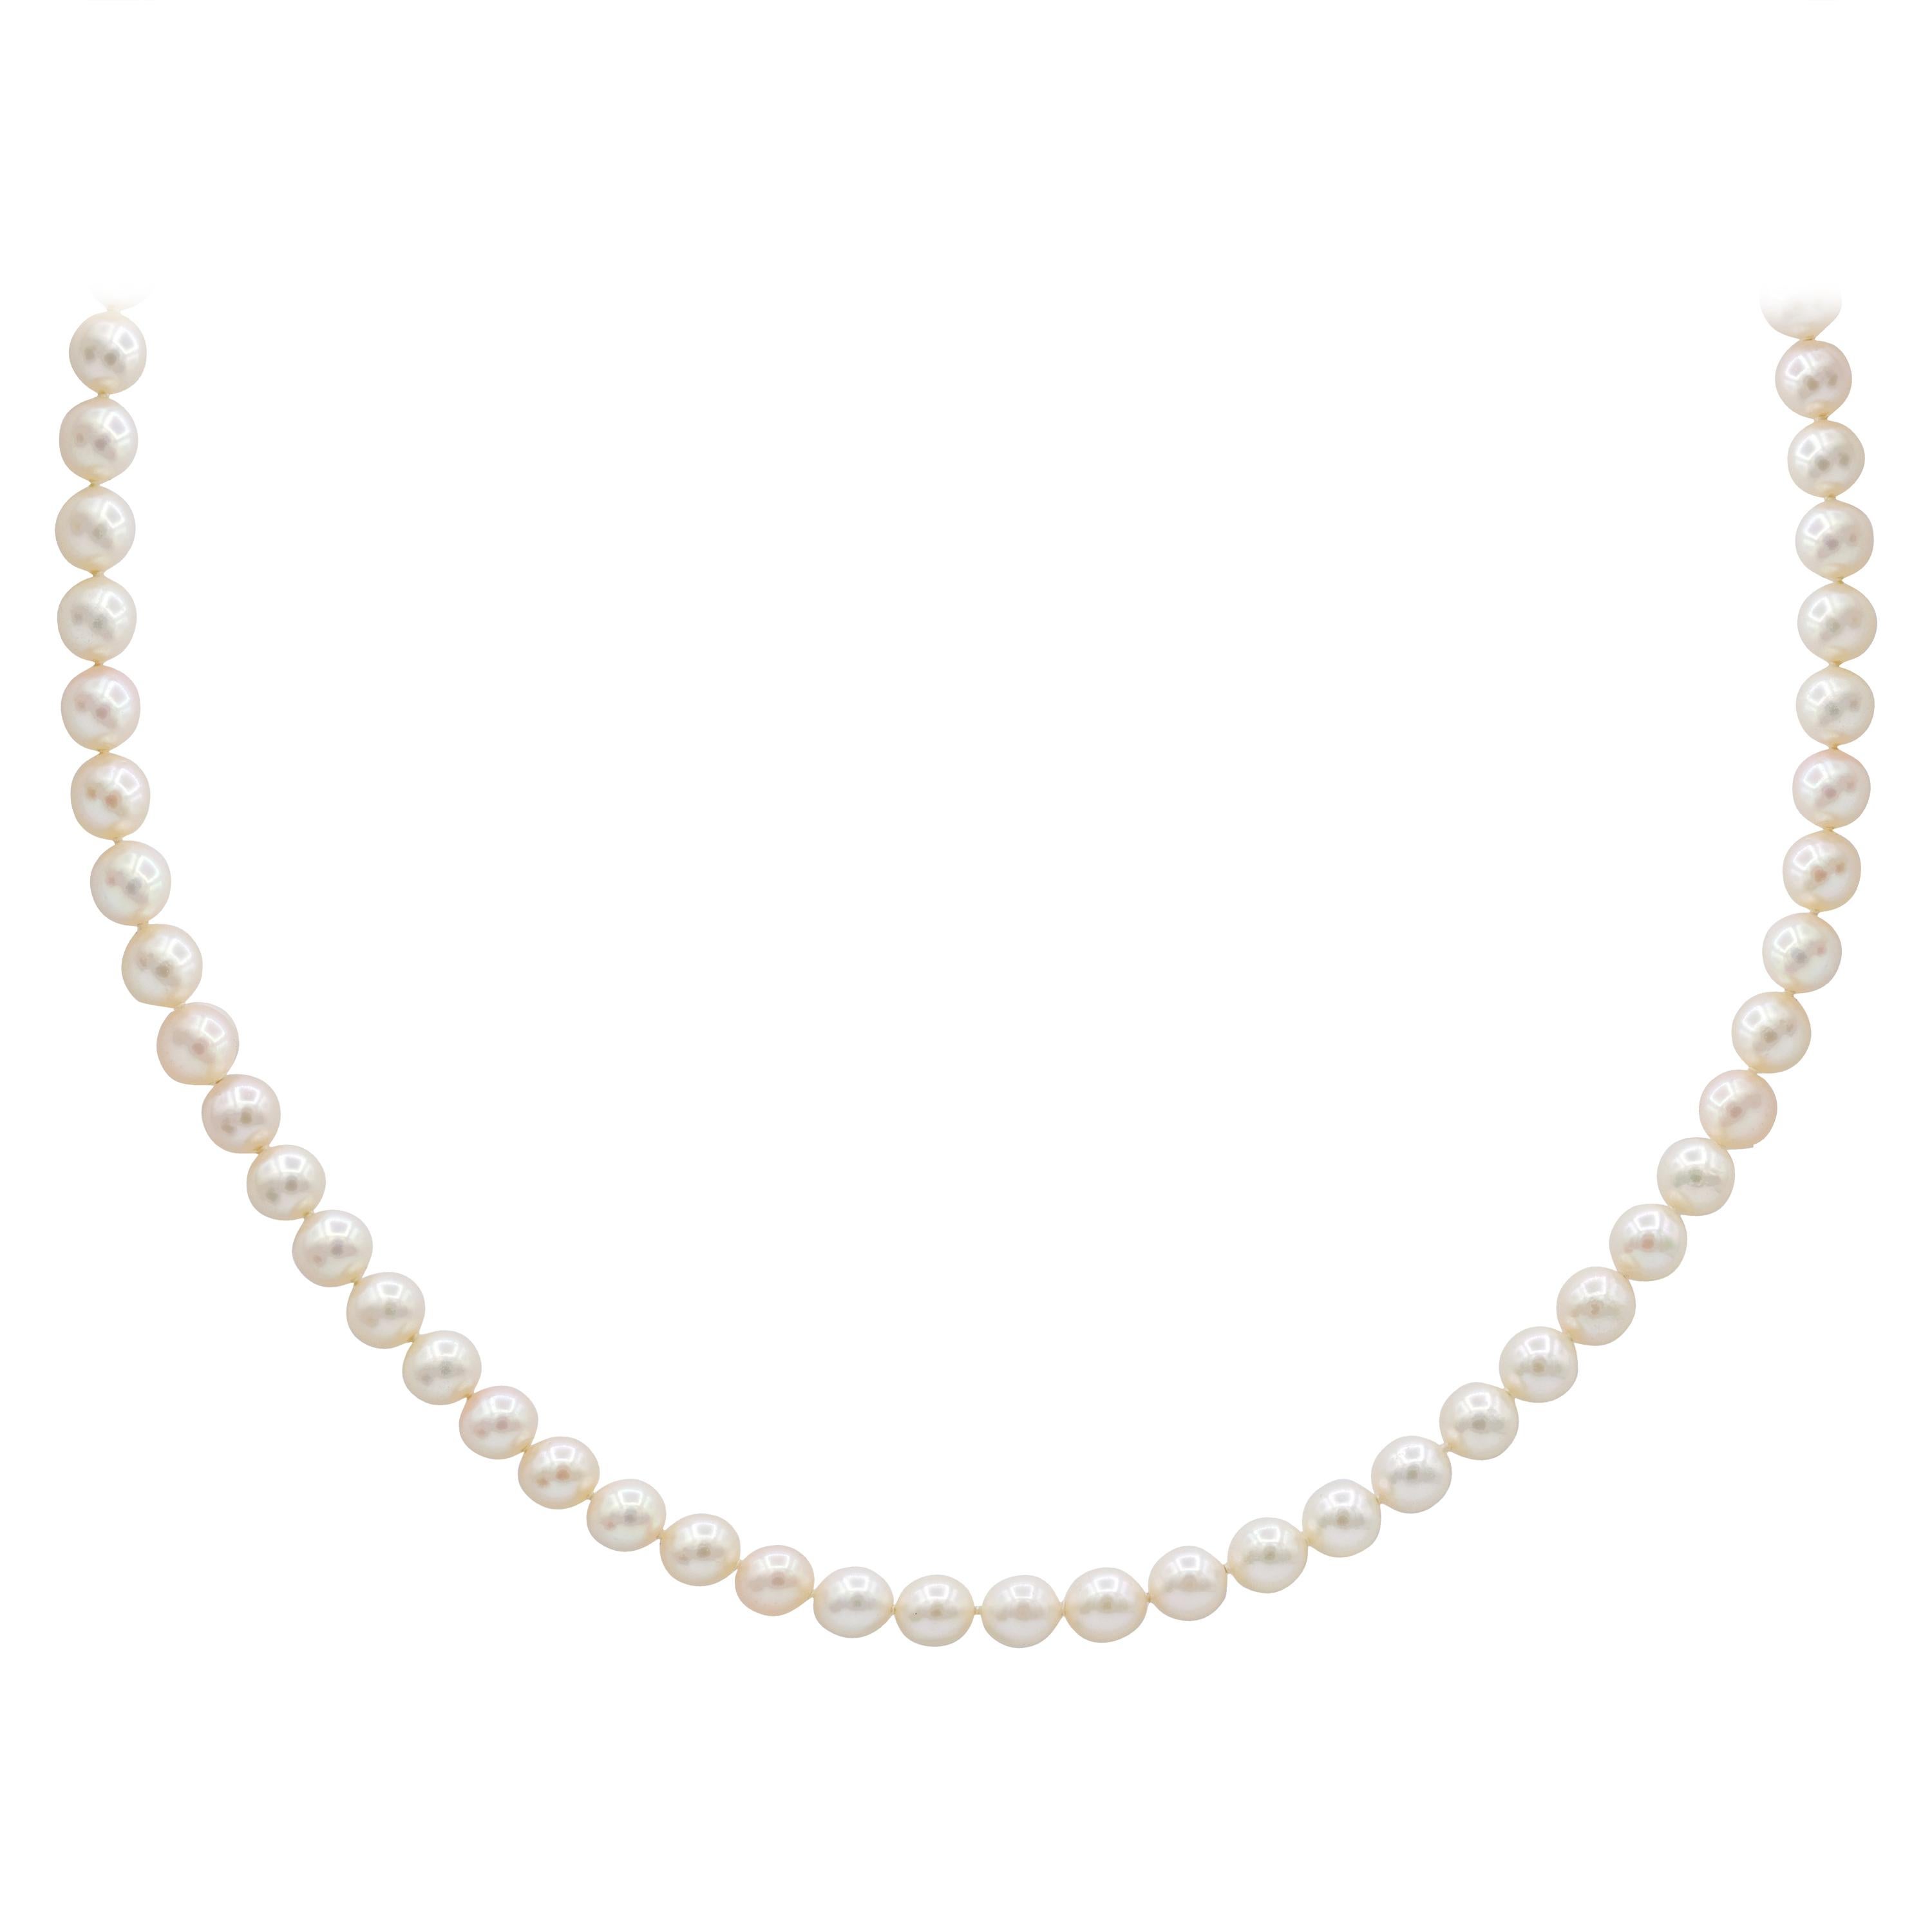 Collier de perles blanches avec fermoir, comporte des diamants ronds